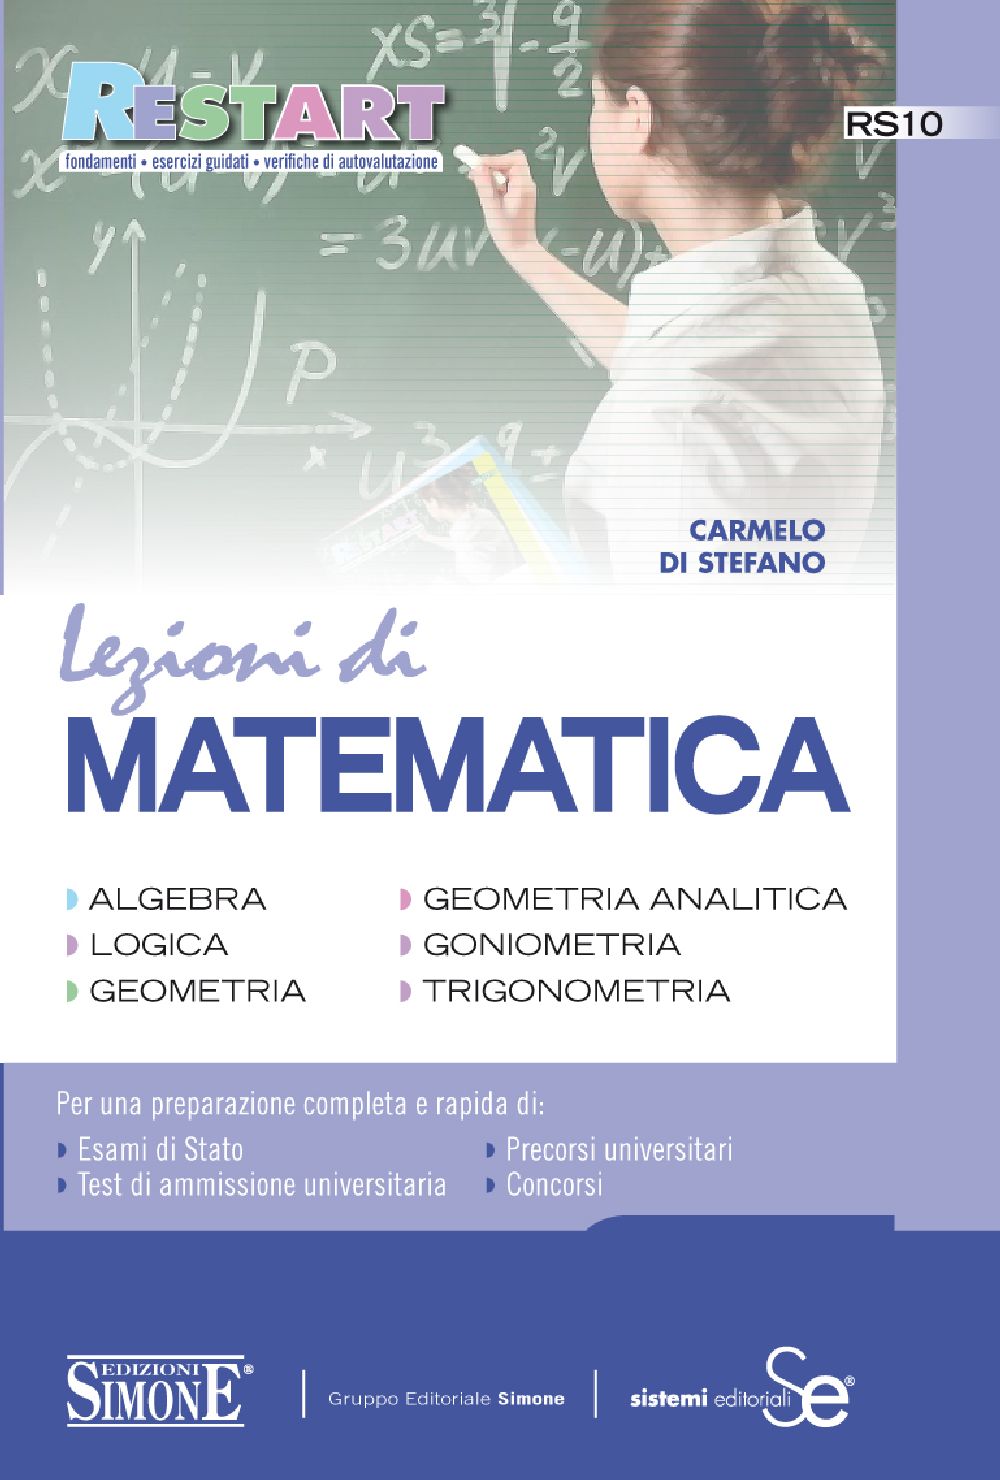 [Ebook] Lezioni di Matematica